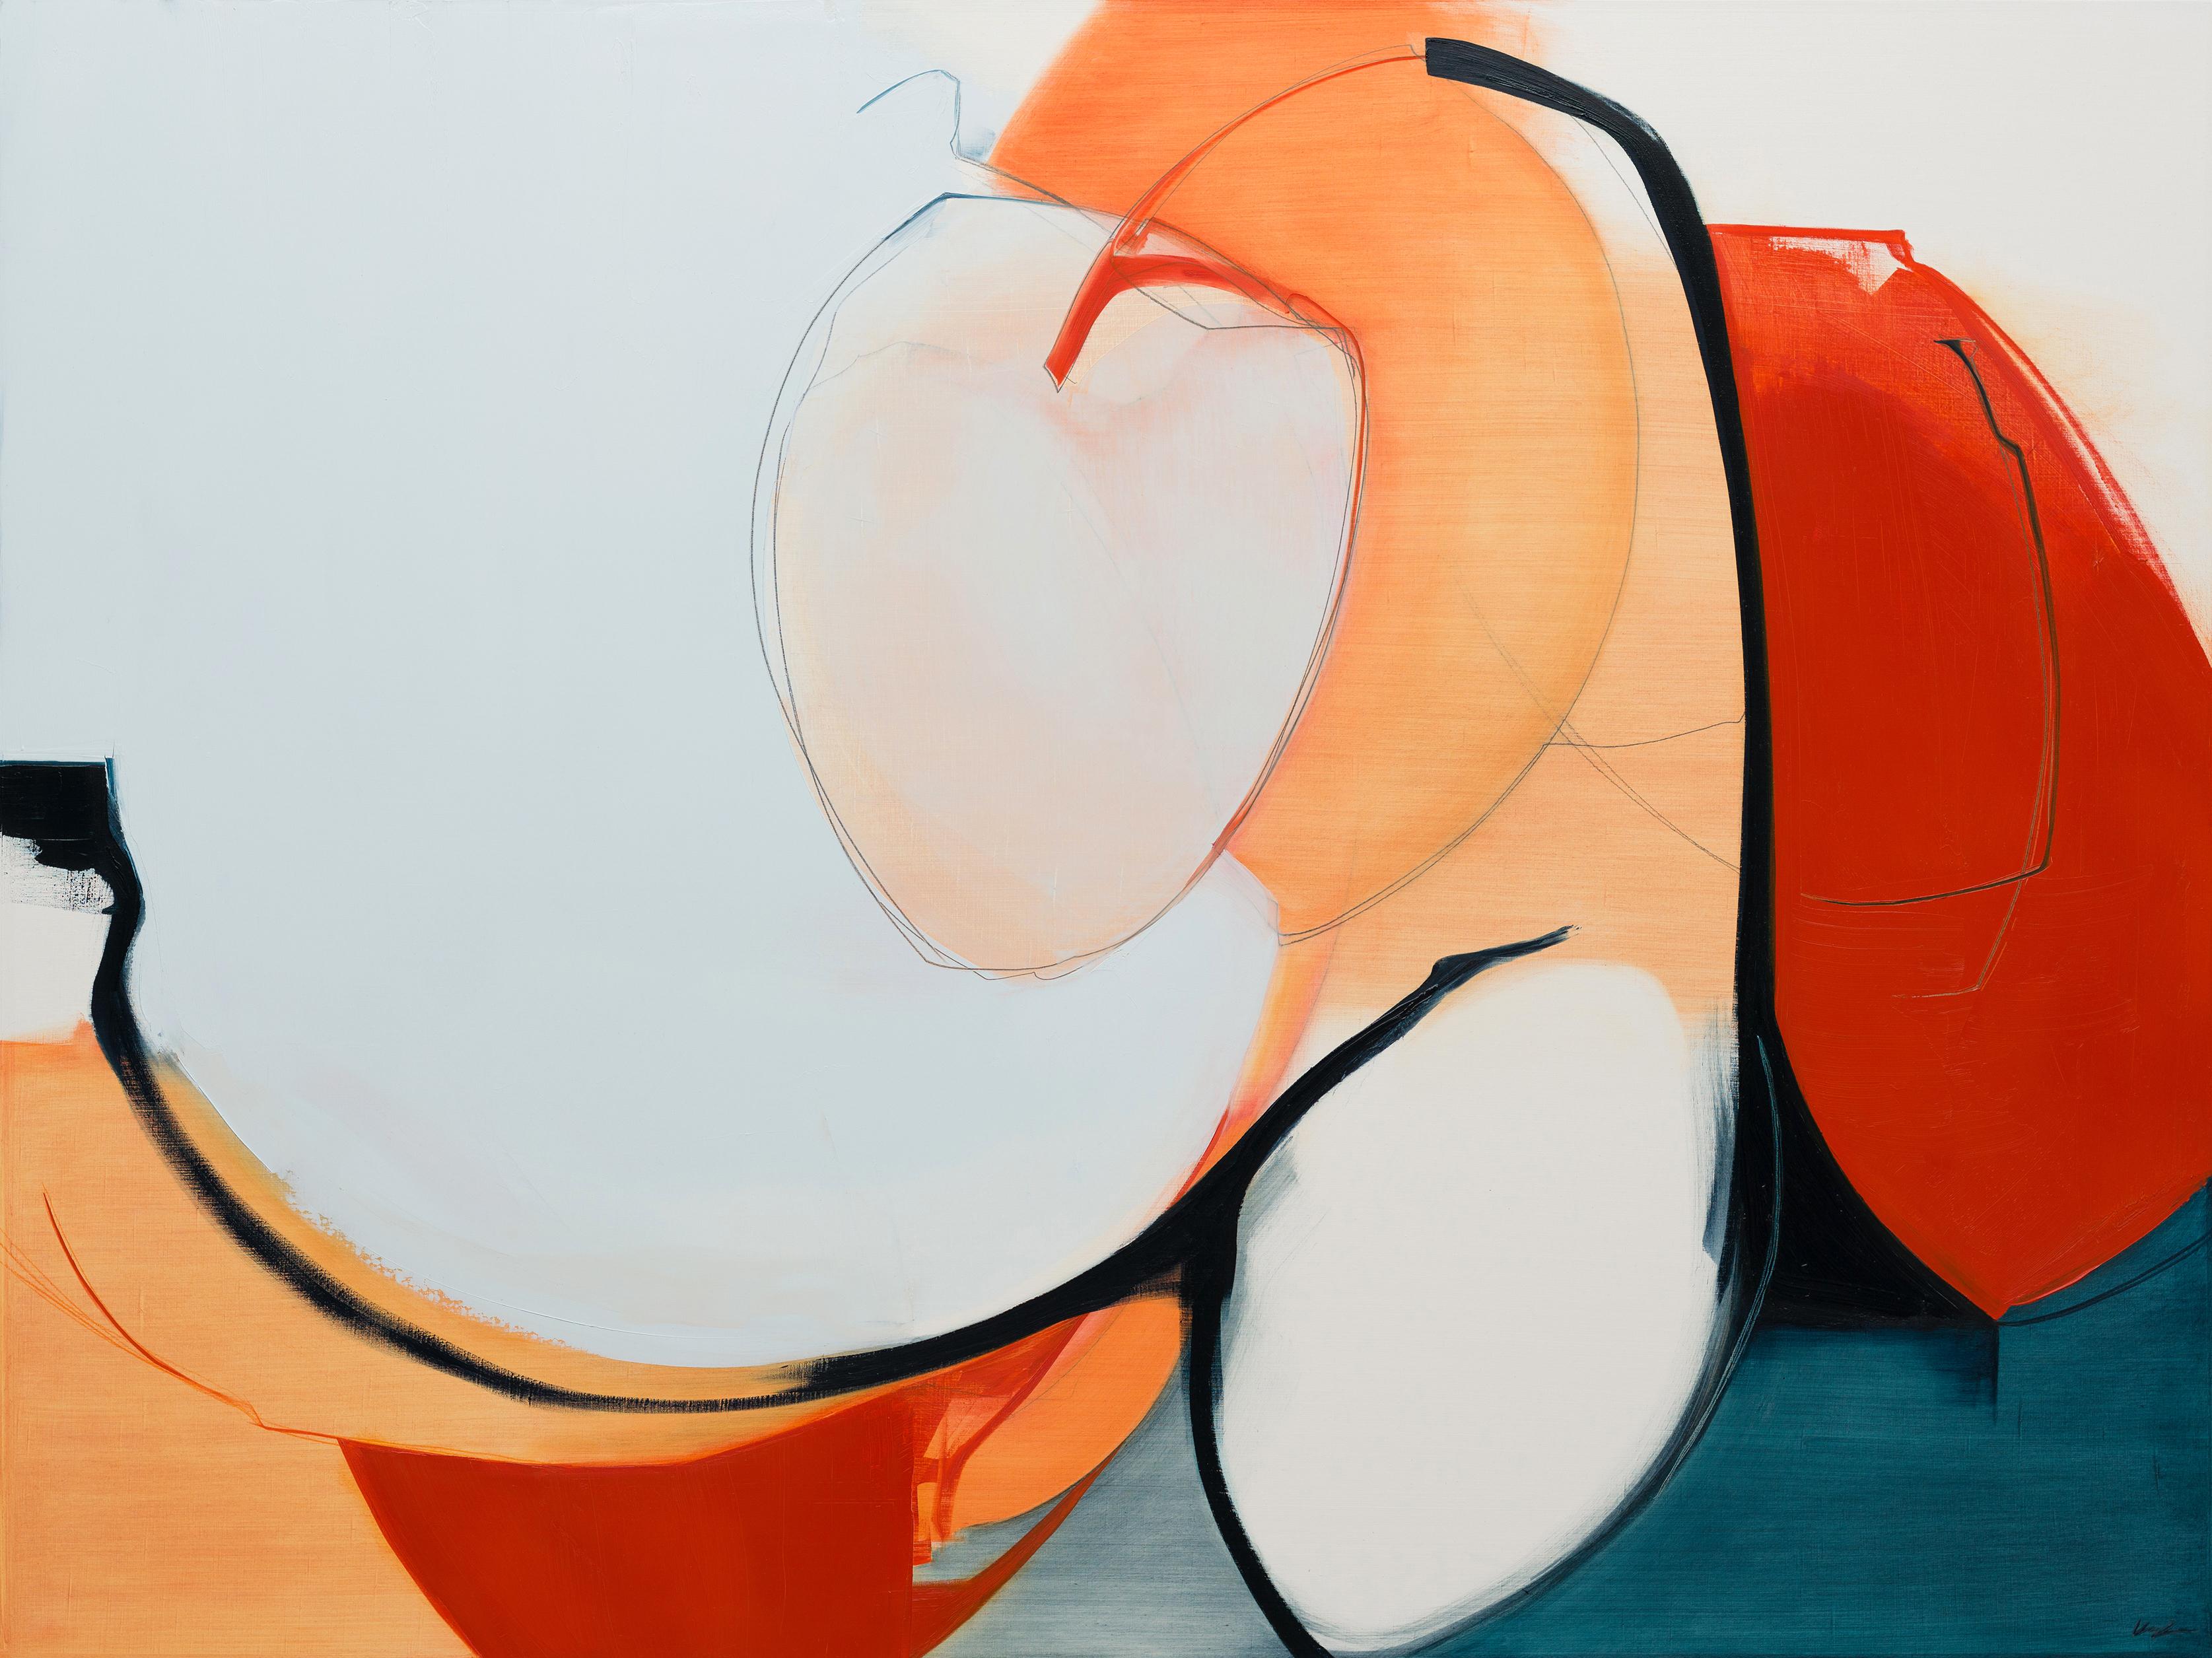 Abstract Painting Rose Umerlik - Collaborez,  Abstrait, huile, graphite, panneau de bois, rouge, orange, bleu, blanc